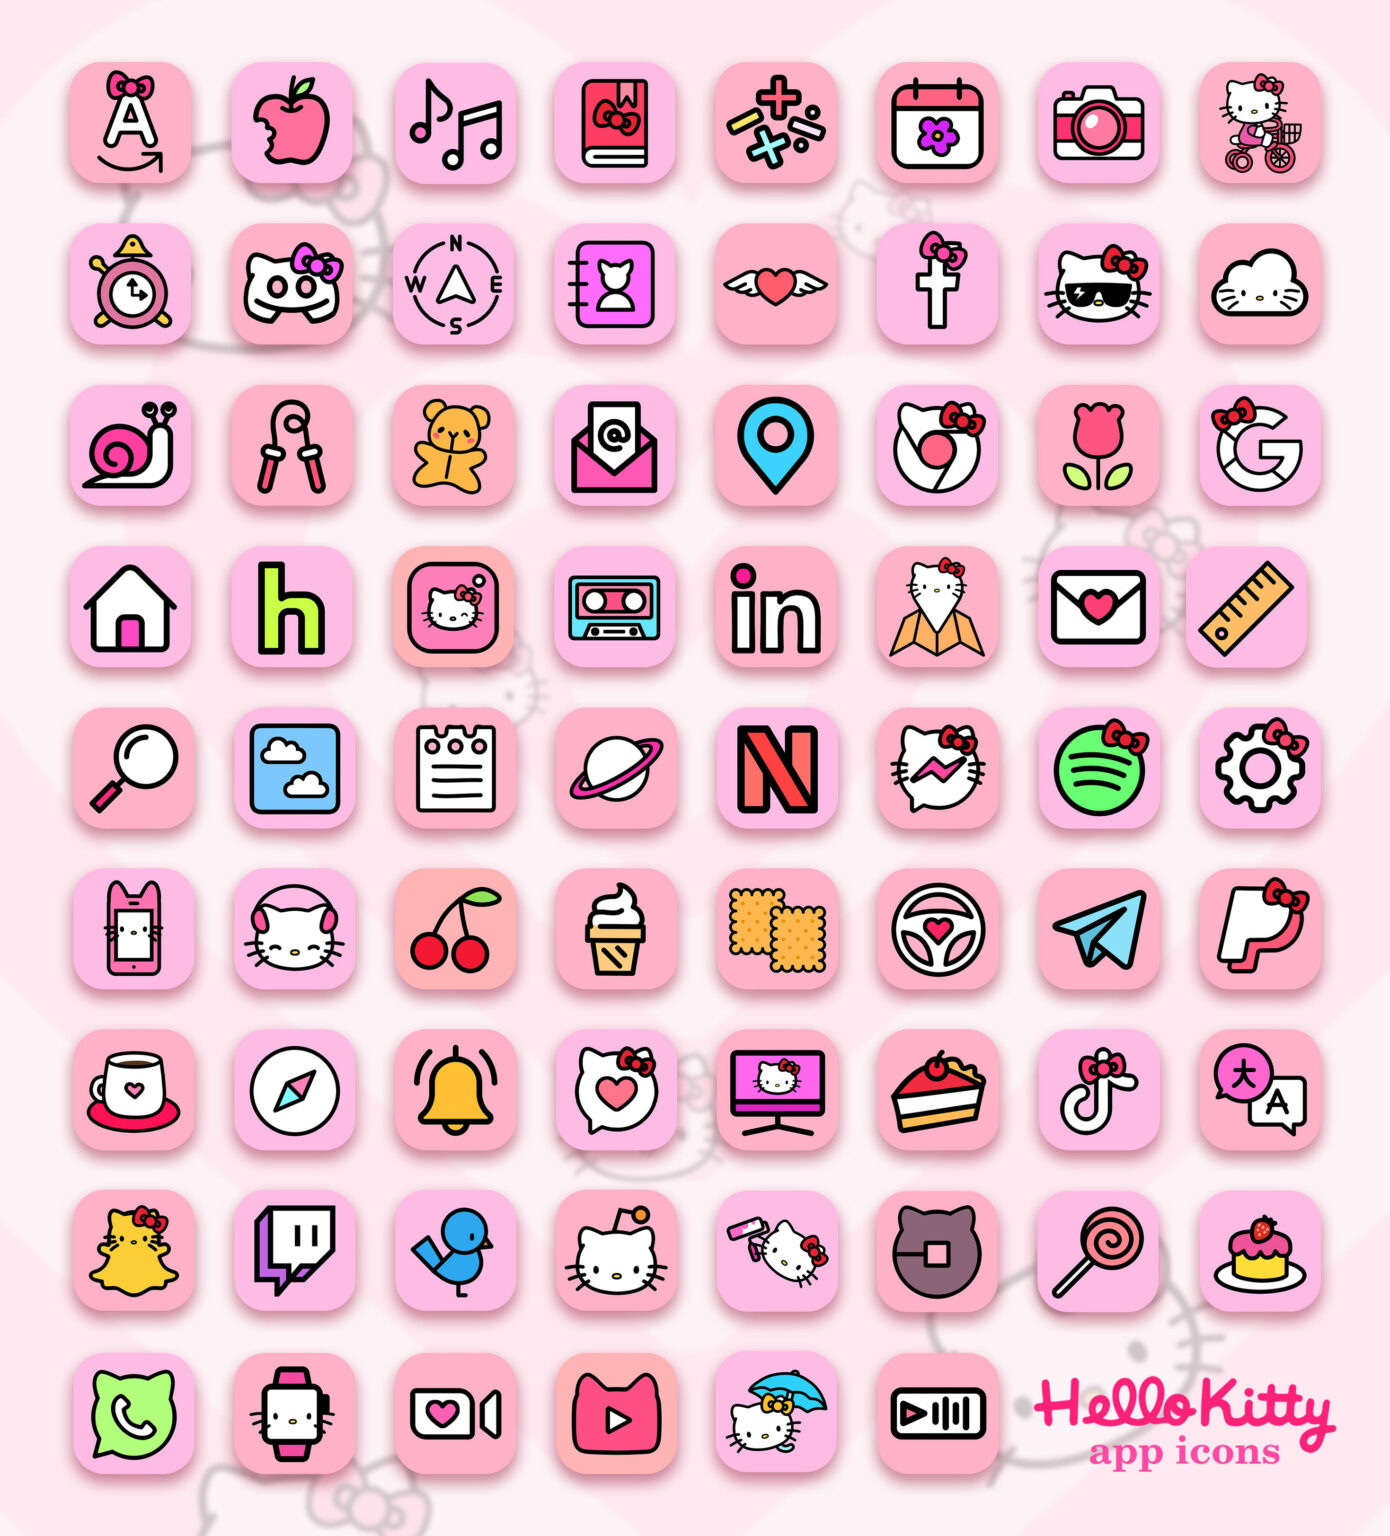 Hello Kitty App Icons 4 iPhone - Sanrio Aesthetic App Icons ﾐ・ ・ﾐ